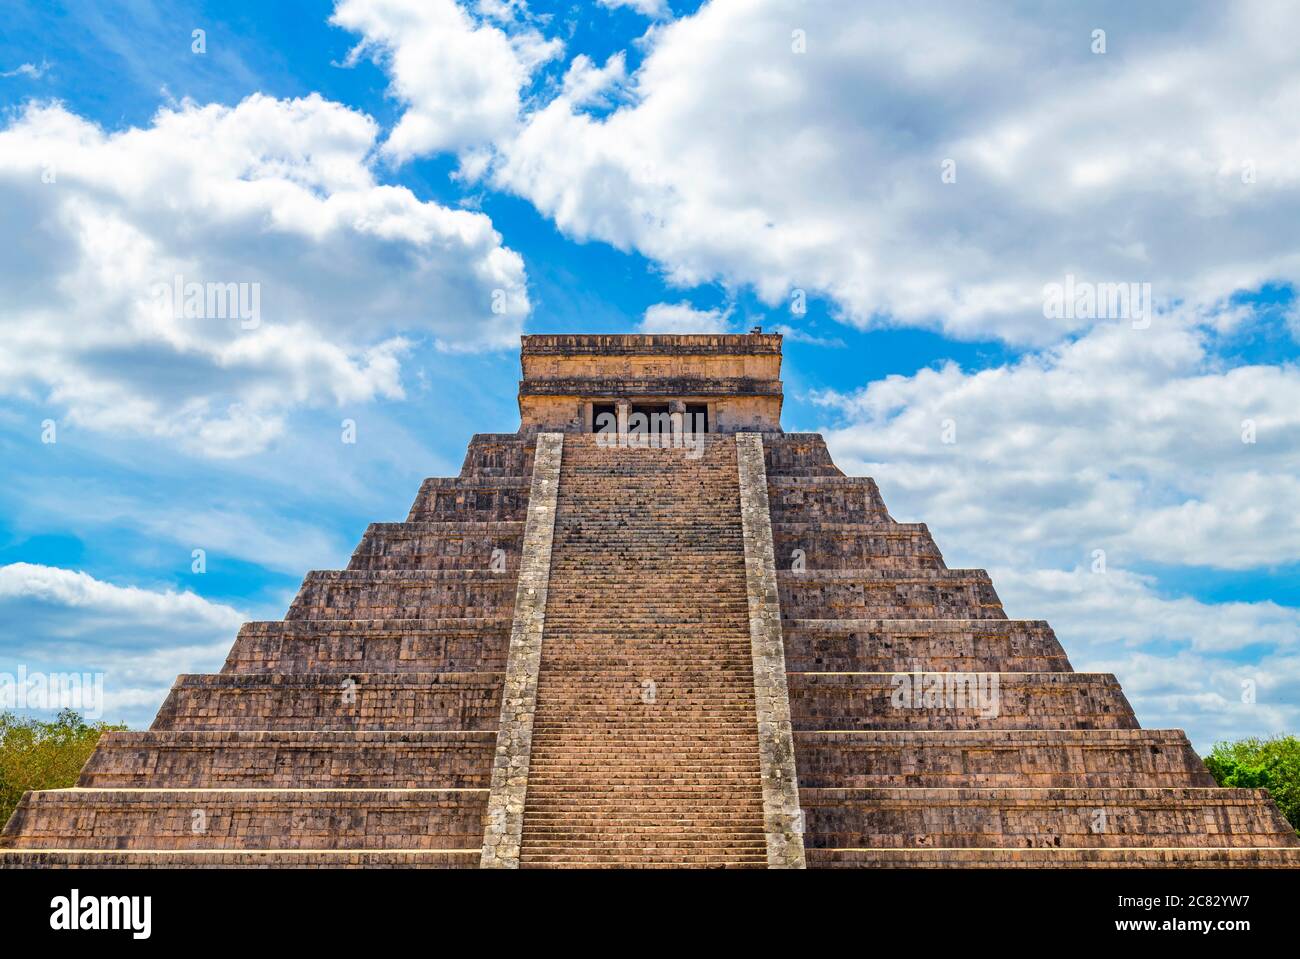 Die Maya-Tempel Pyramide von El Castillo oder Kukulkan in der archäologischen Stätte von Chichen Itza, Yucatan, Mexiko. Stockfoto